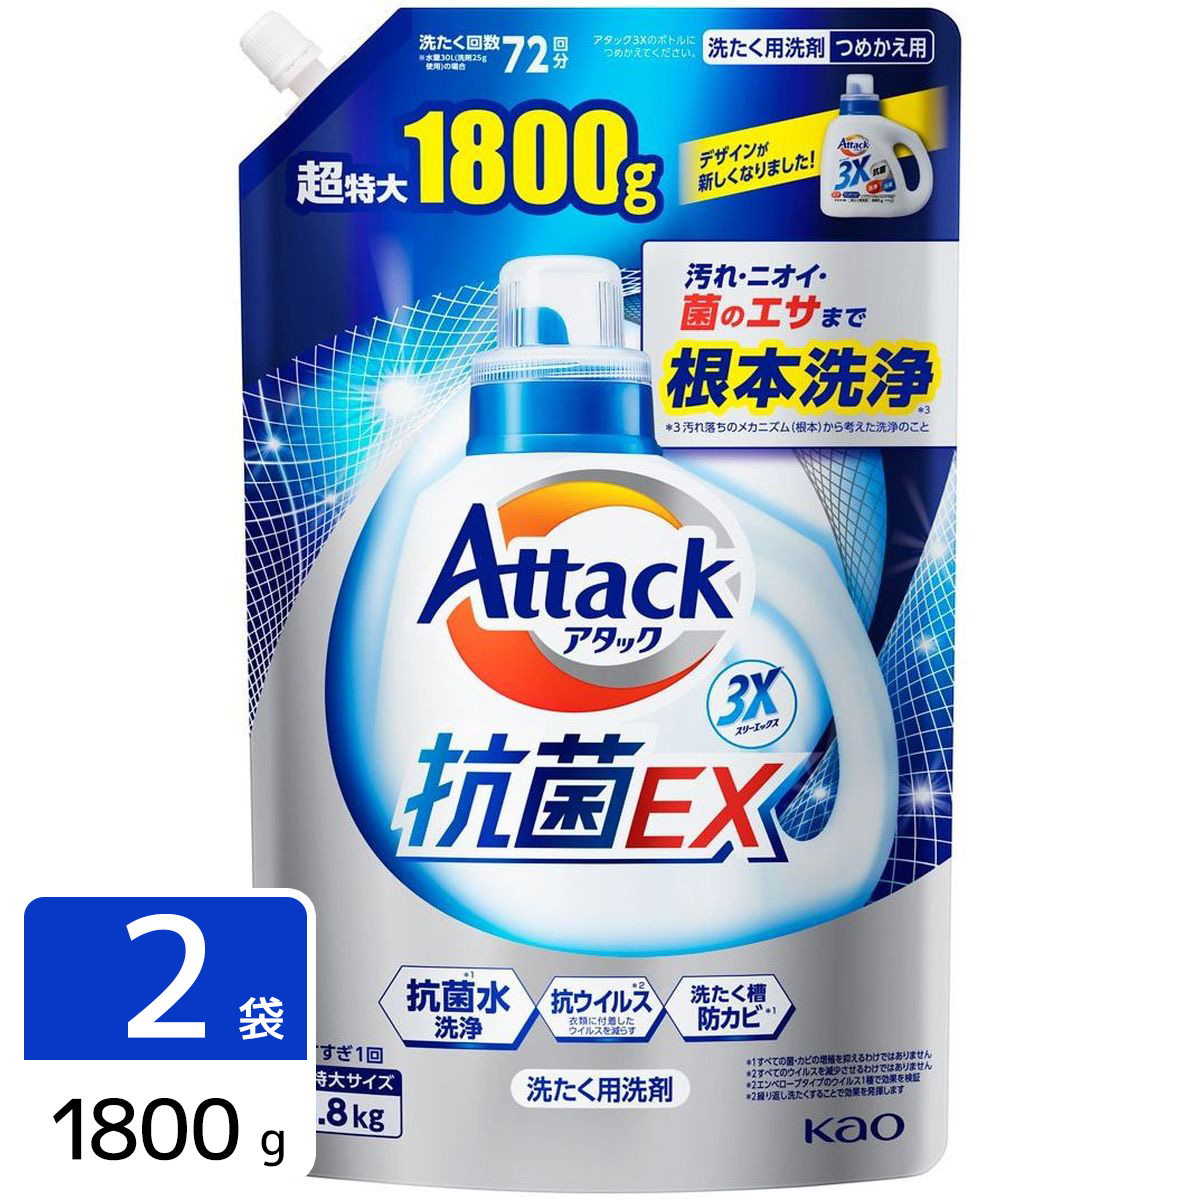 アタック 抗菌EX 洗濯洗剤 詰め替え 超特大 1800g 2袋セット